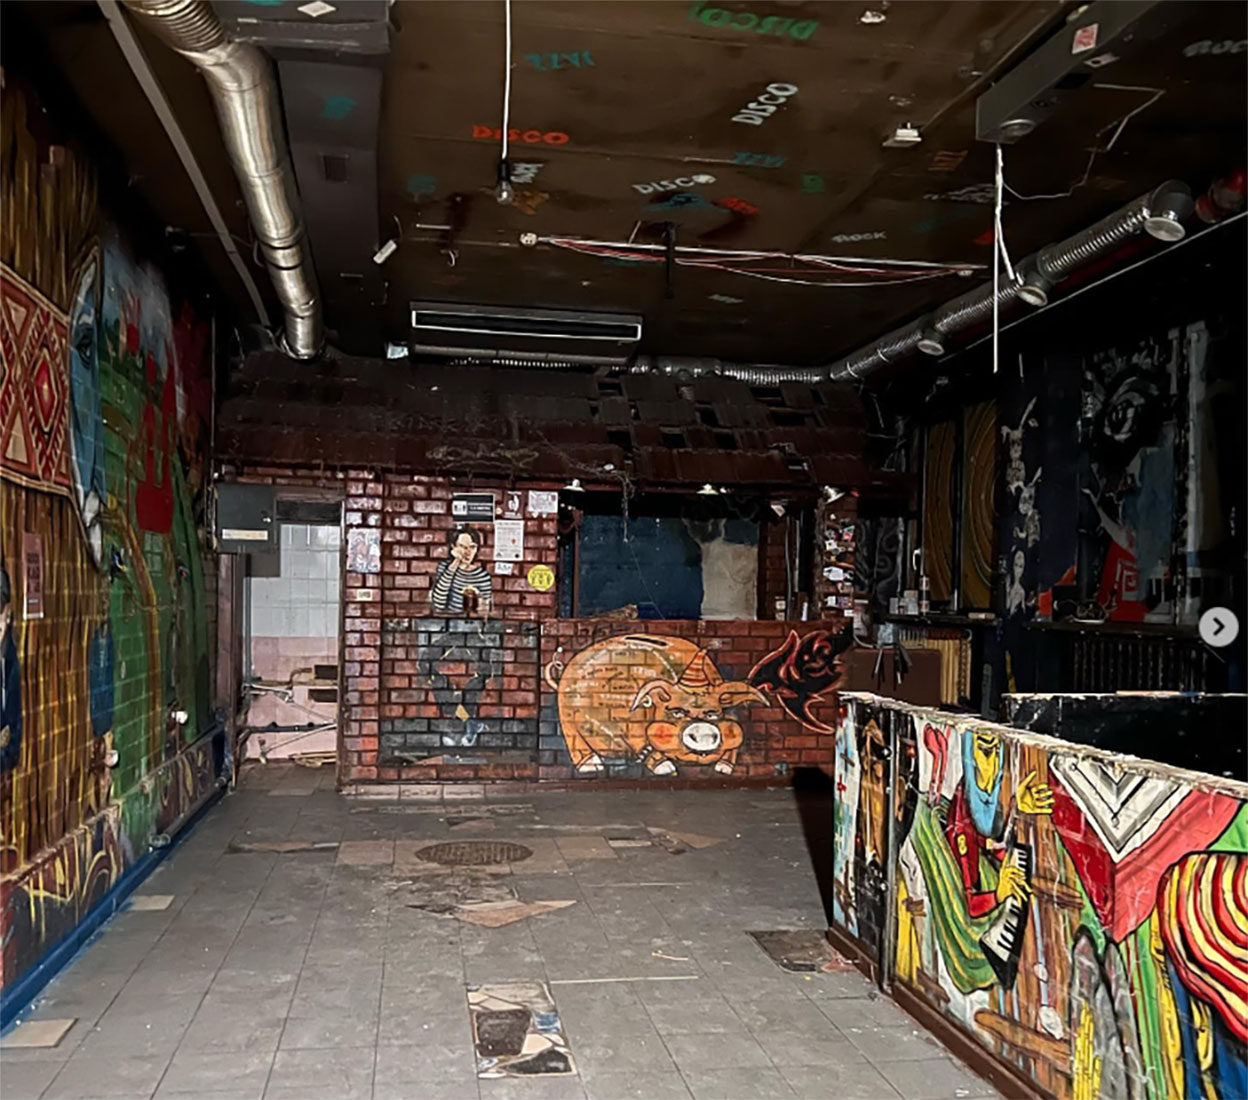 Закрытый и постепенно разрушающийся бар «Граффити» как символ андеграунда в Беларуси